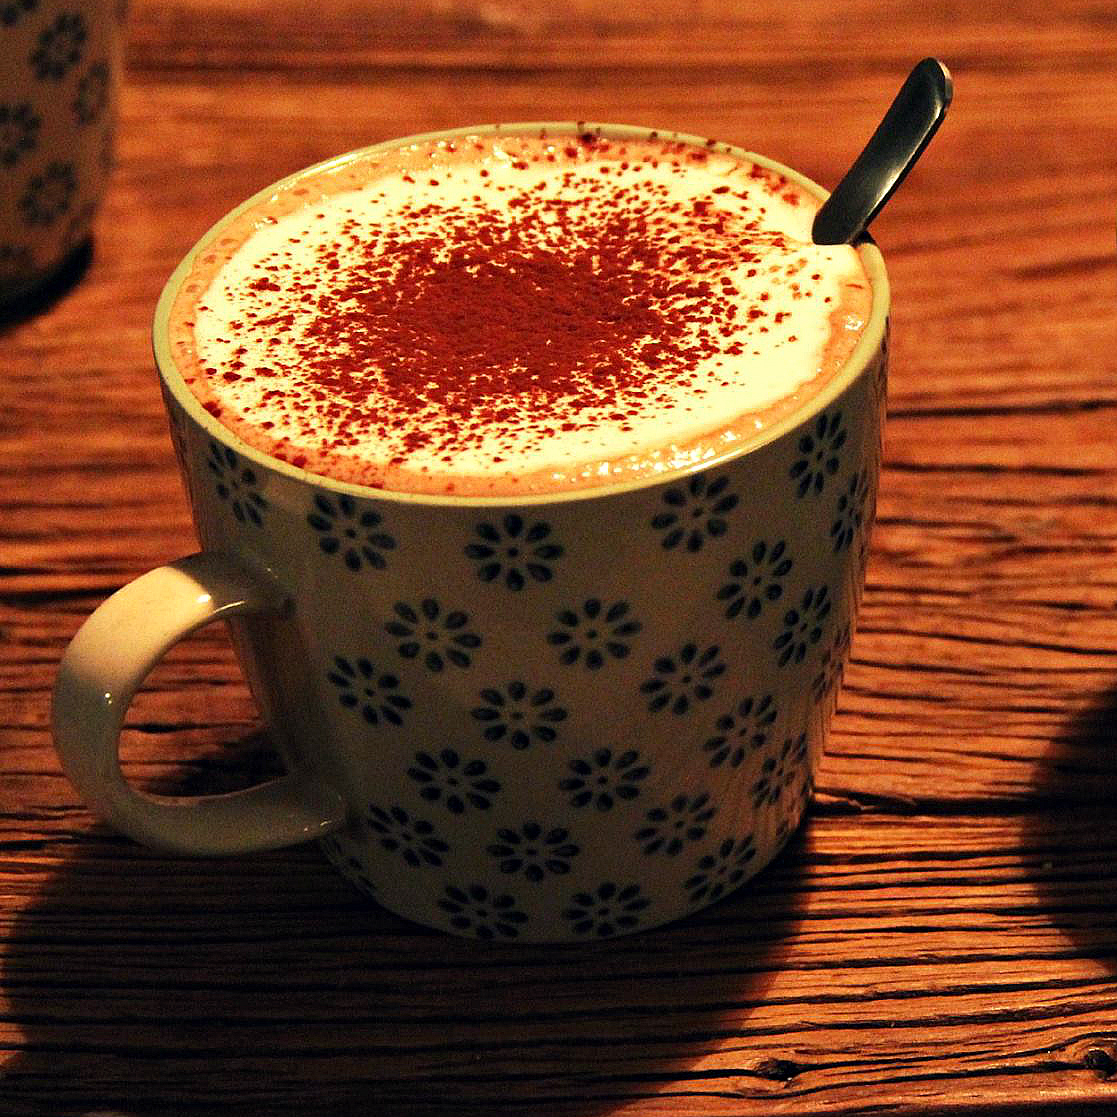 Vegan Hot Chocolate & Whipped Cream - The Vegan Eskimo